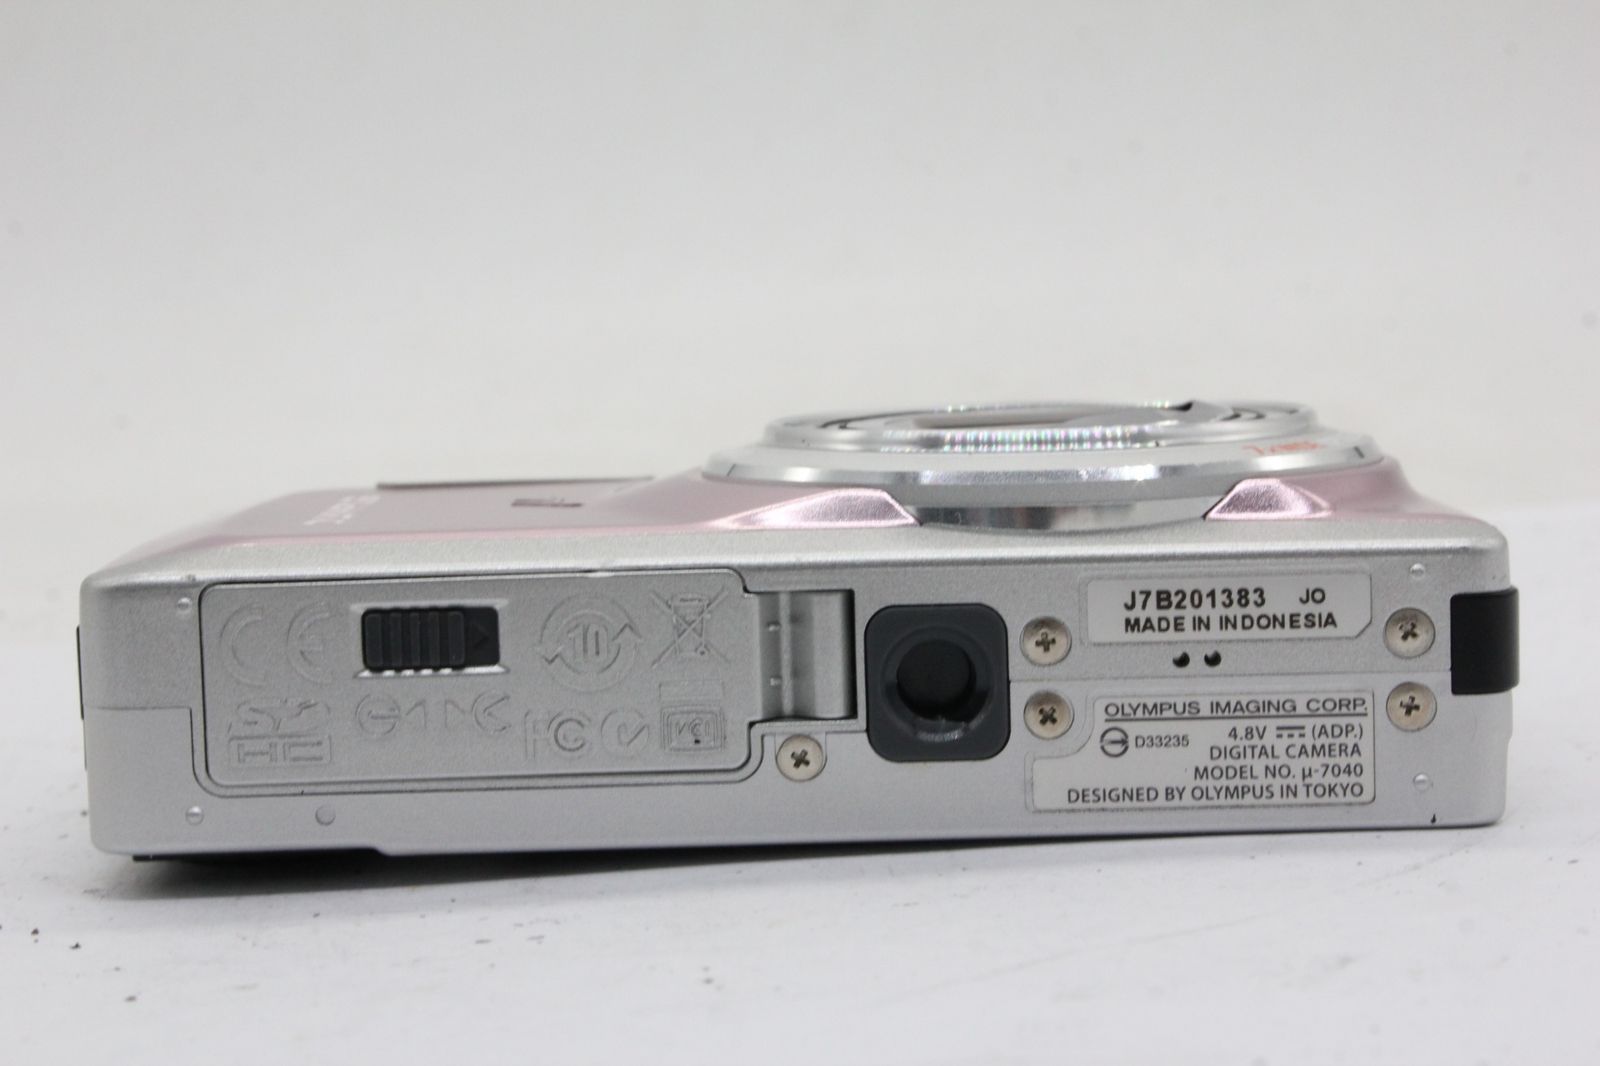 オリンパス 【返品保証】 オリンパス Olympus μ-7040 ピンク 7x Wide バッテリー付き コンパクトデジタルカメラ v1604